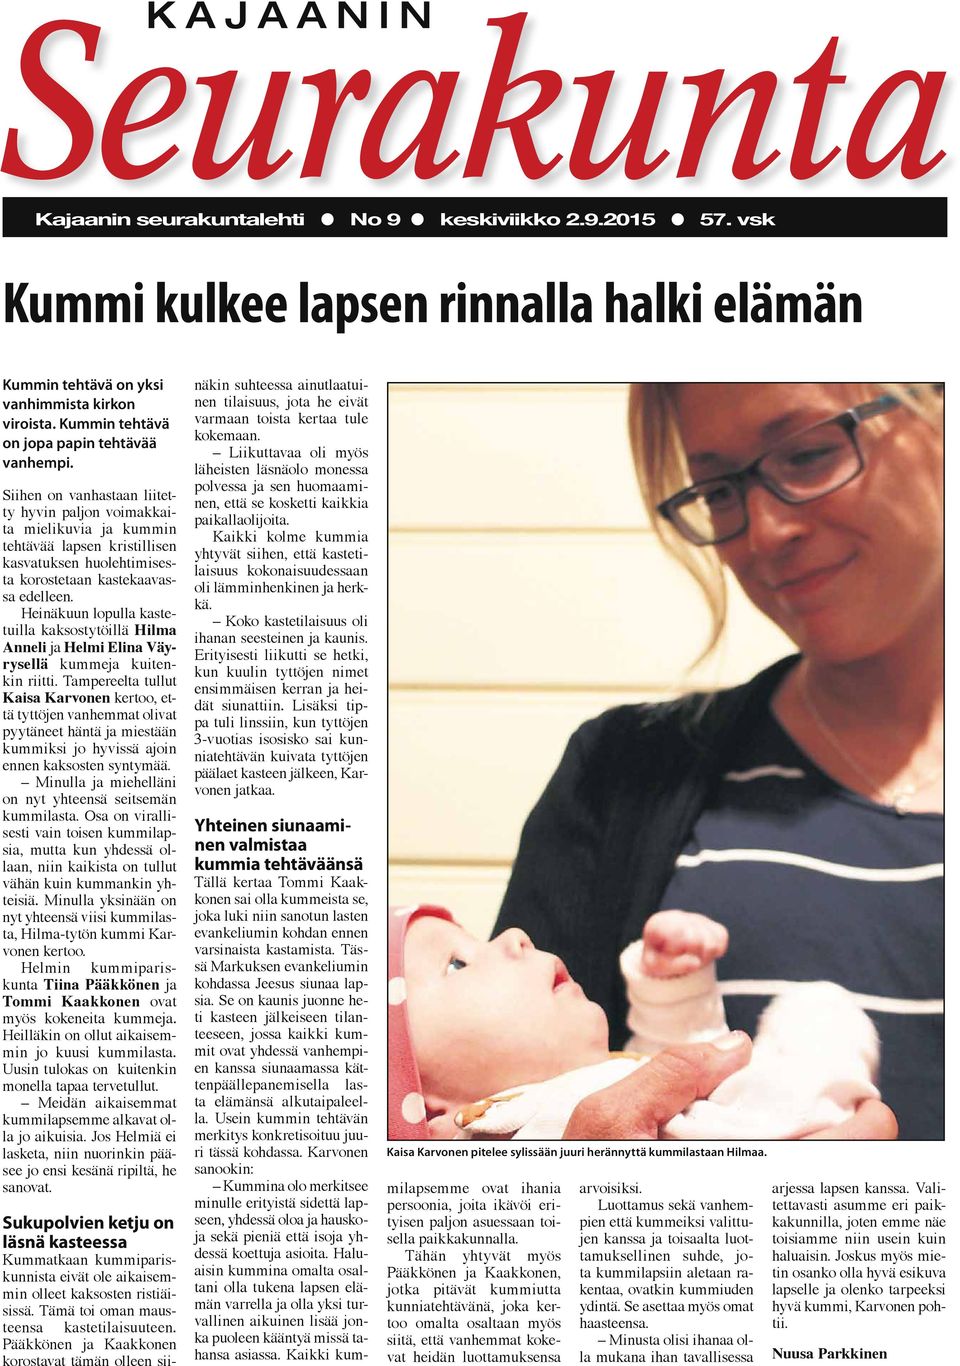 Heinäkuun lopulla kastetuilla kaksostytöillä Hilma Anneli ja Helmi Elina Väyrysellä kummeja kuitenkin riitti.